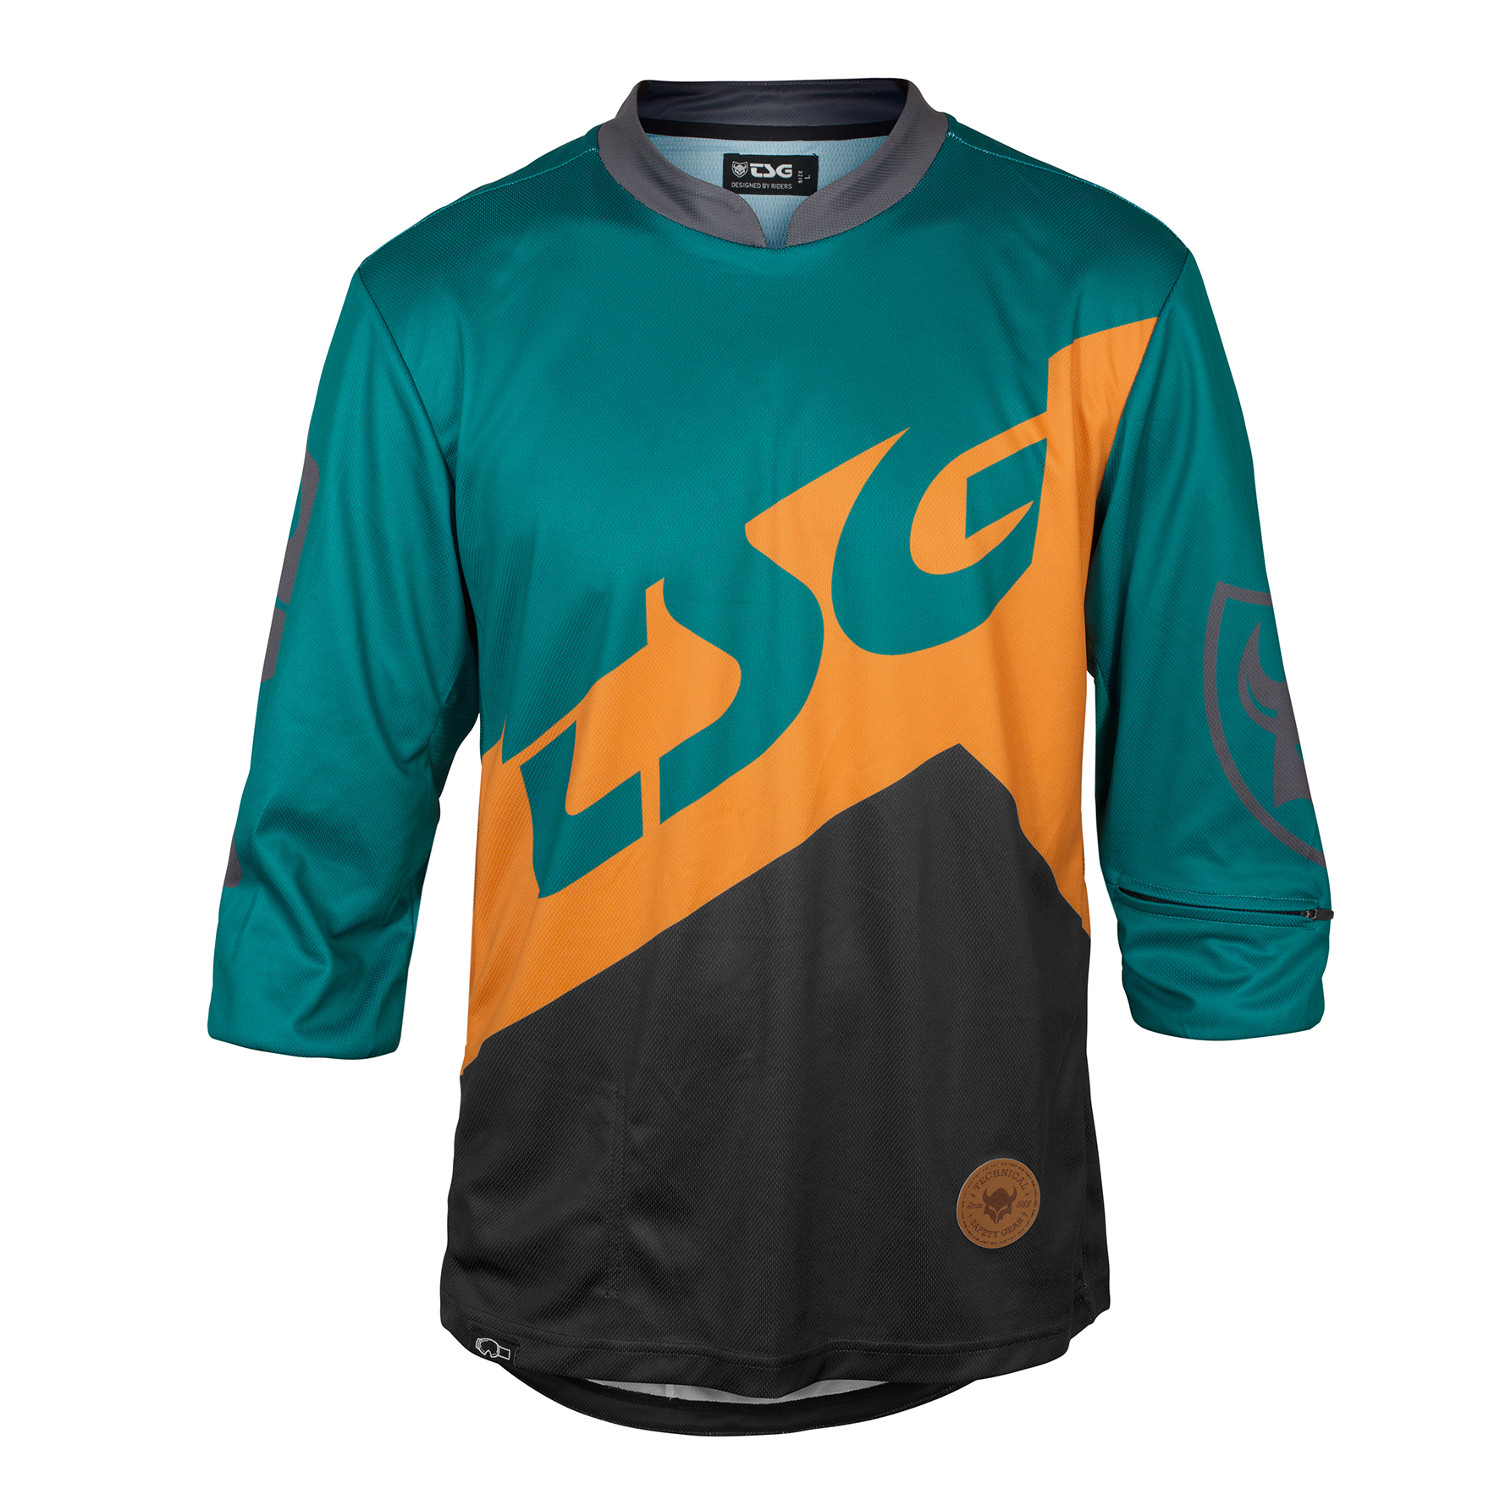 TSG Bike Jersey ¾ Sleeve AK1 Black/Green